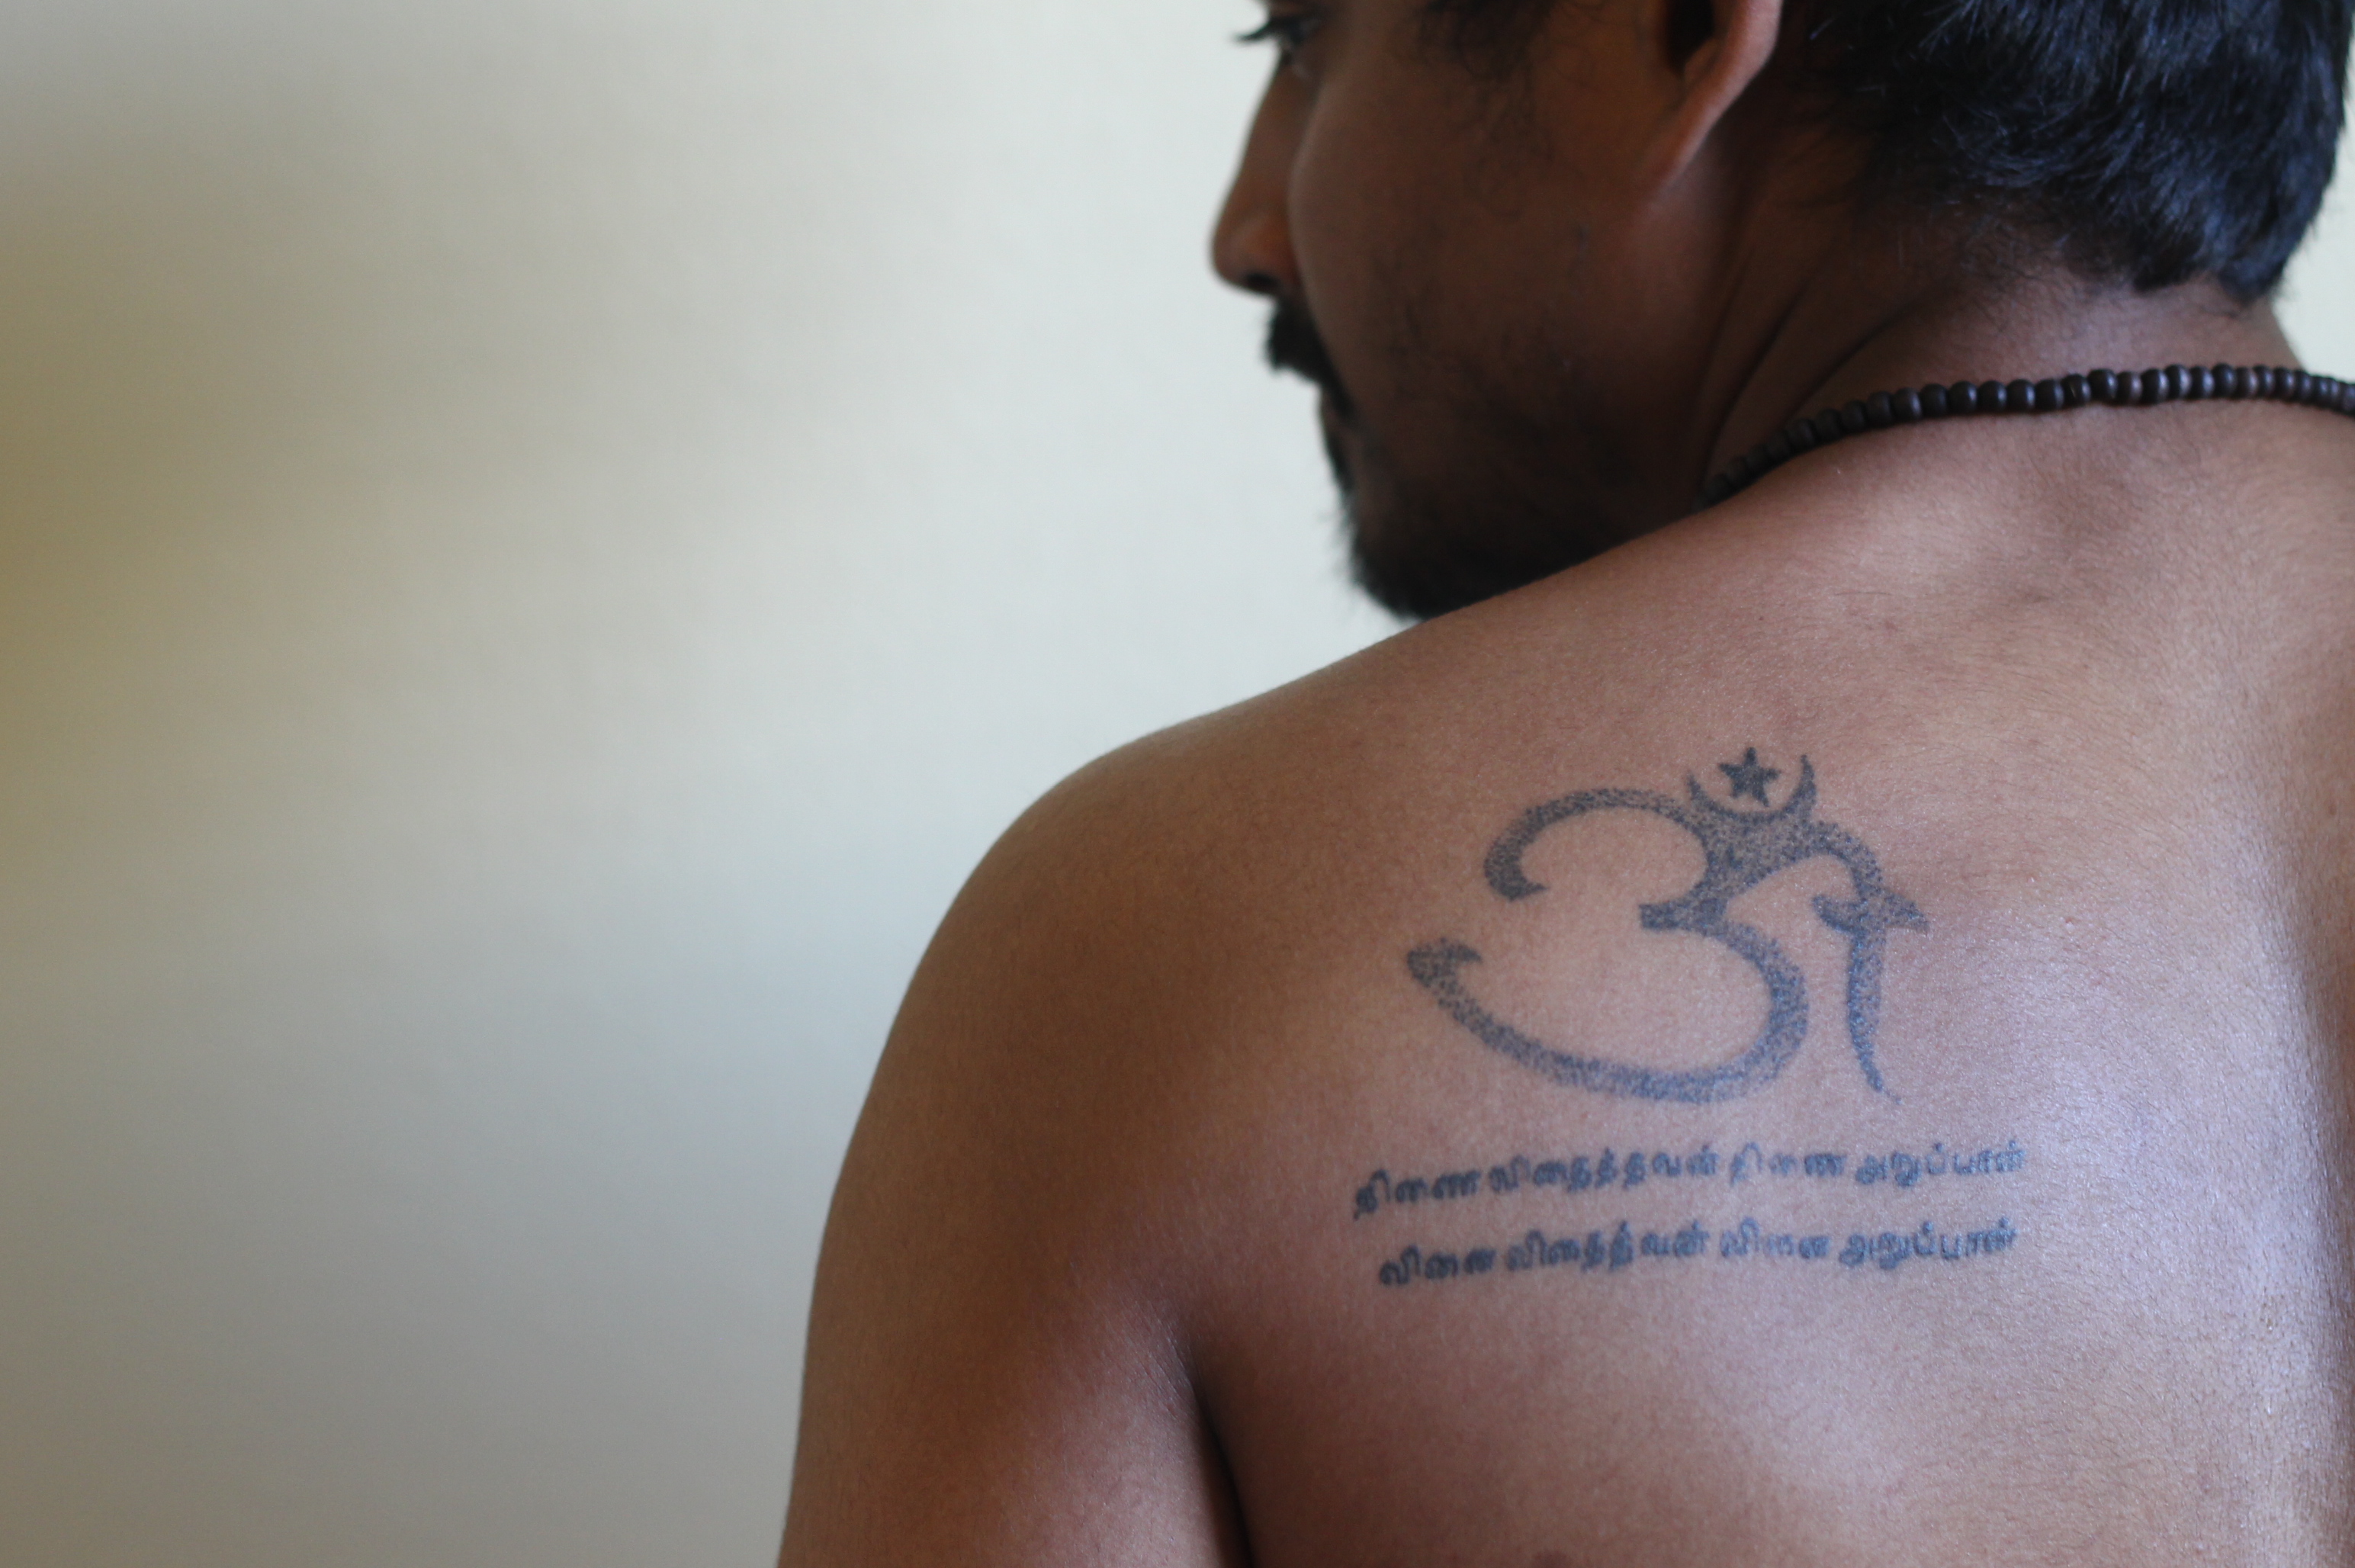 Tamil scripting tattoo | Tattoos, Tattoo script, Tattoo designs